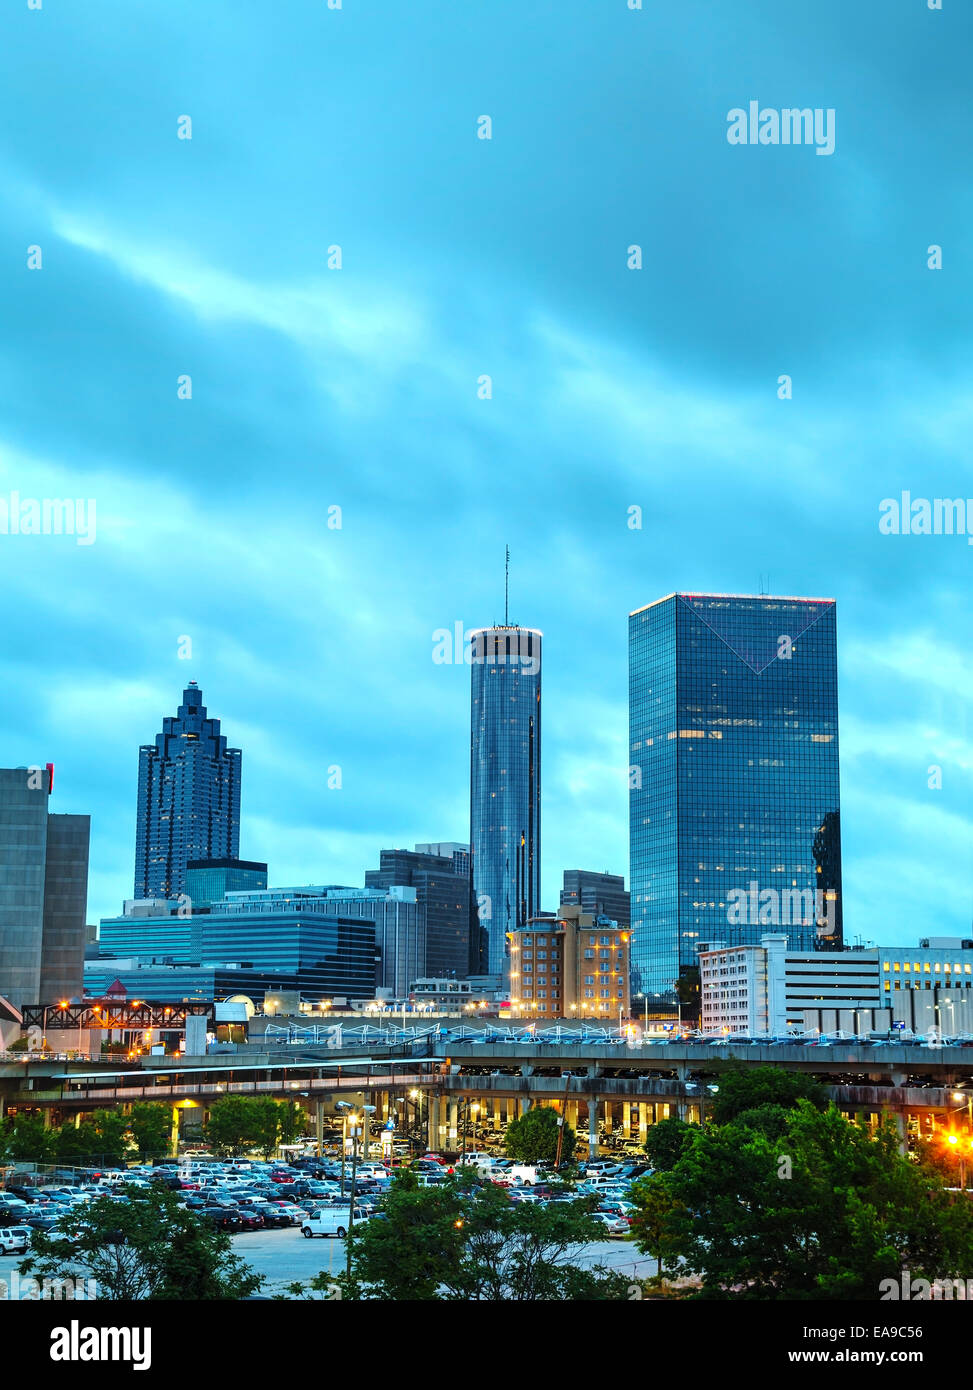 Downtown Atlanta, Georgia at night time Stock Photo